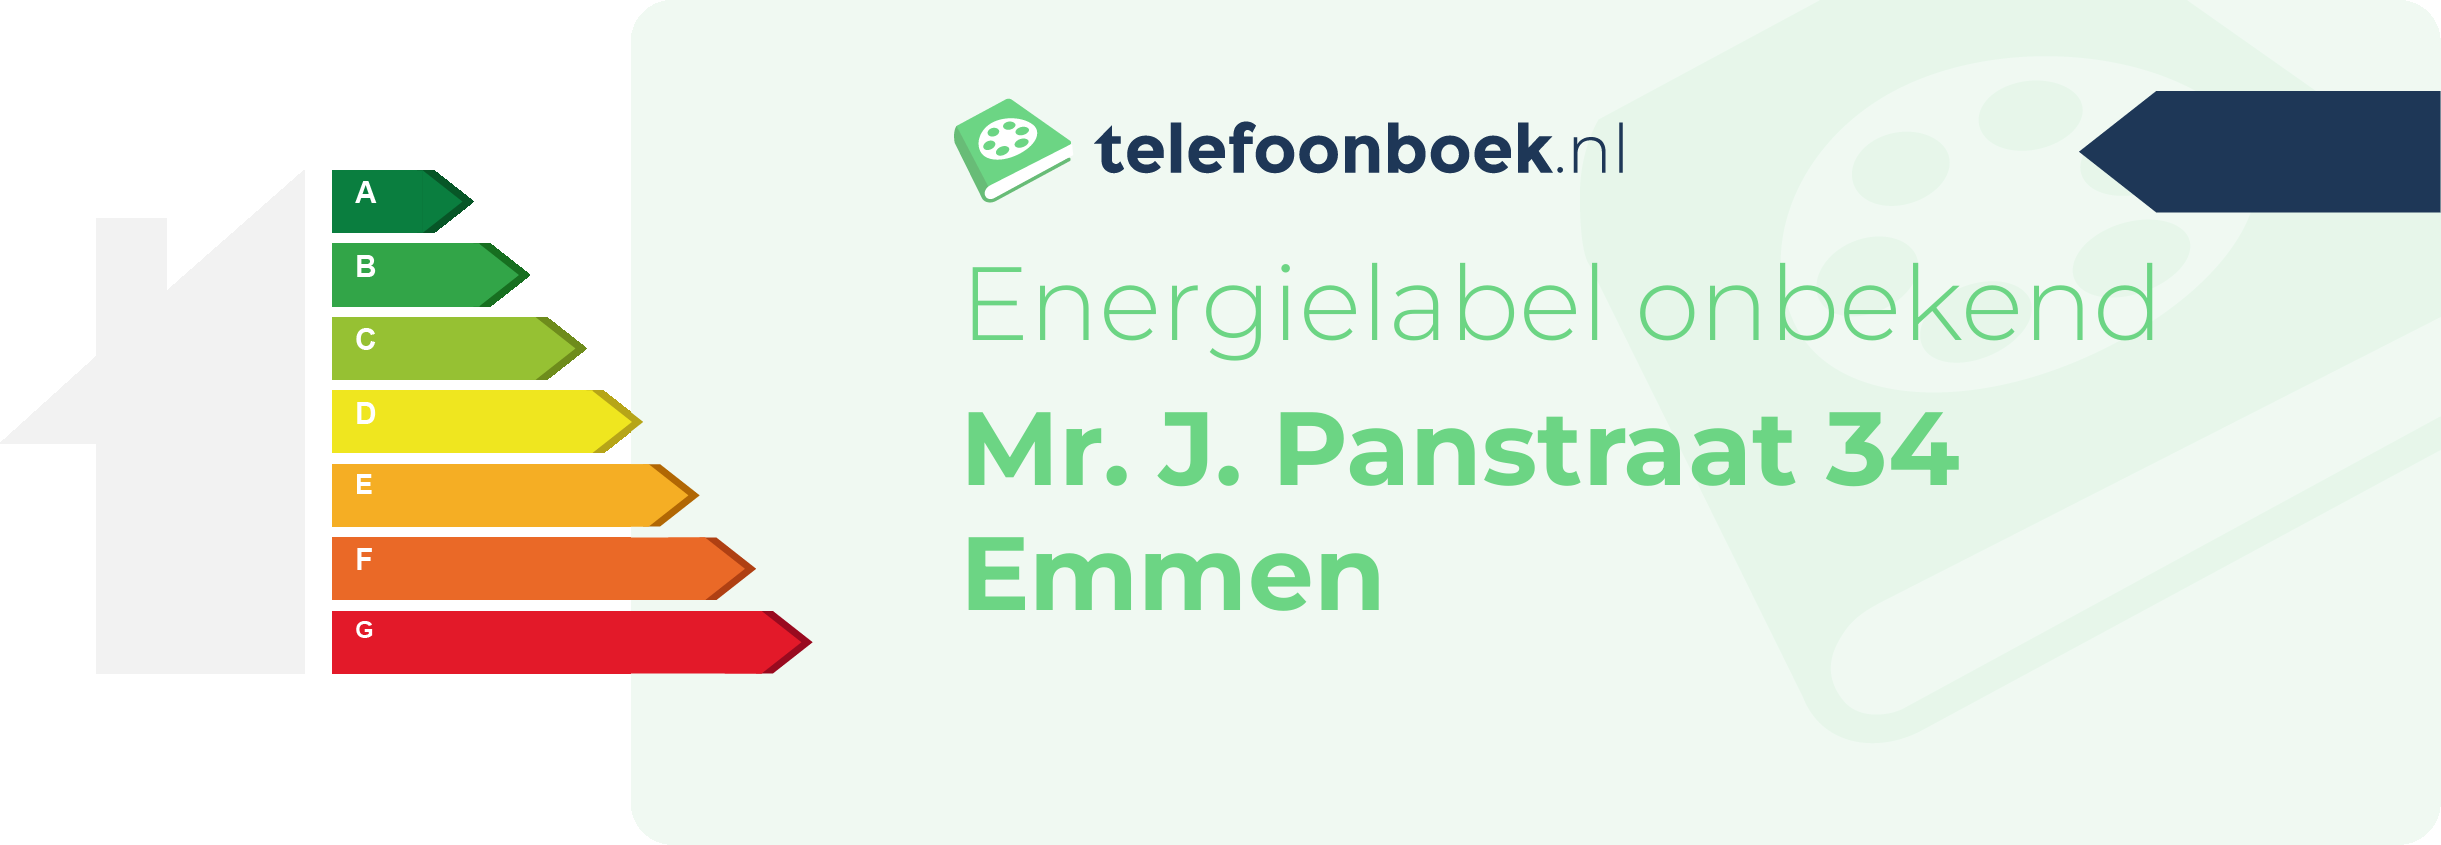 Energielabel Mr. J. Panstraat 34 Emmen